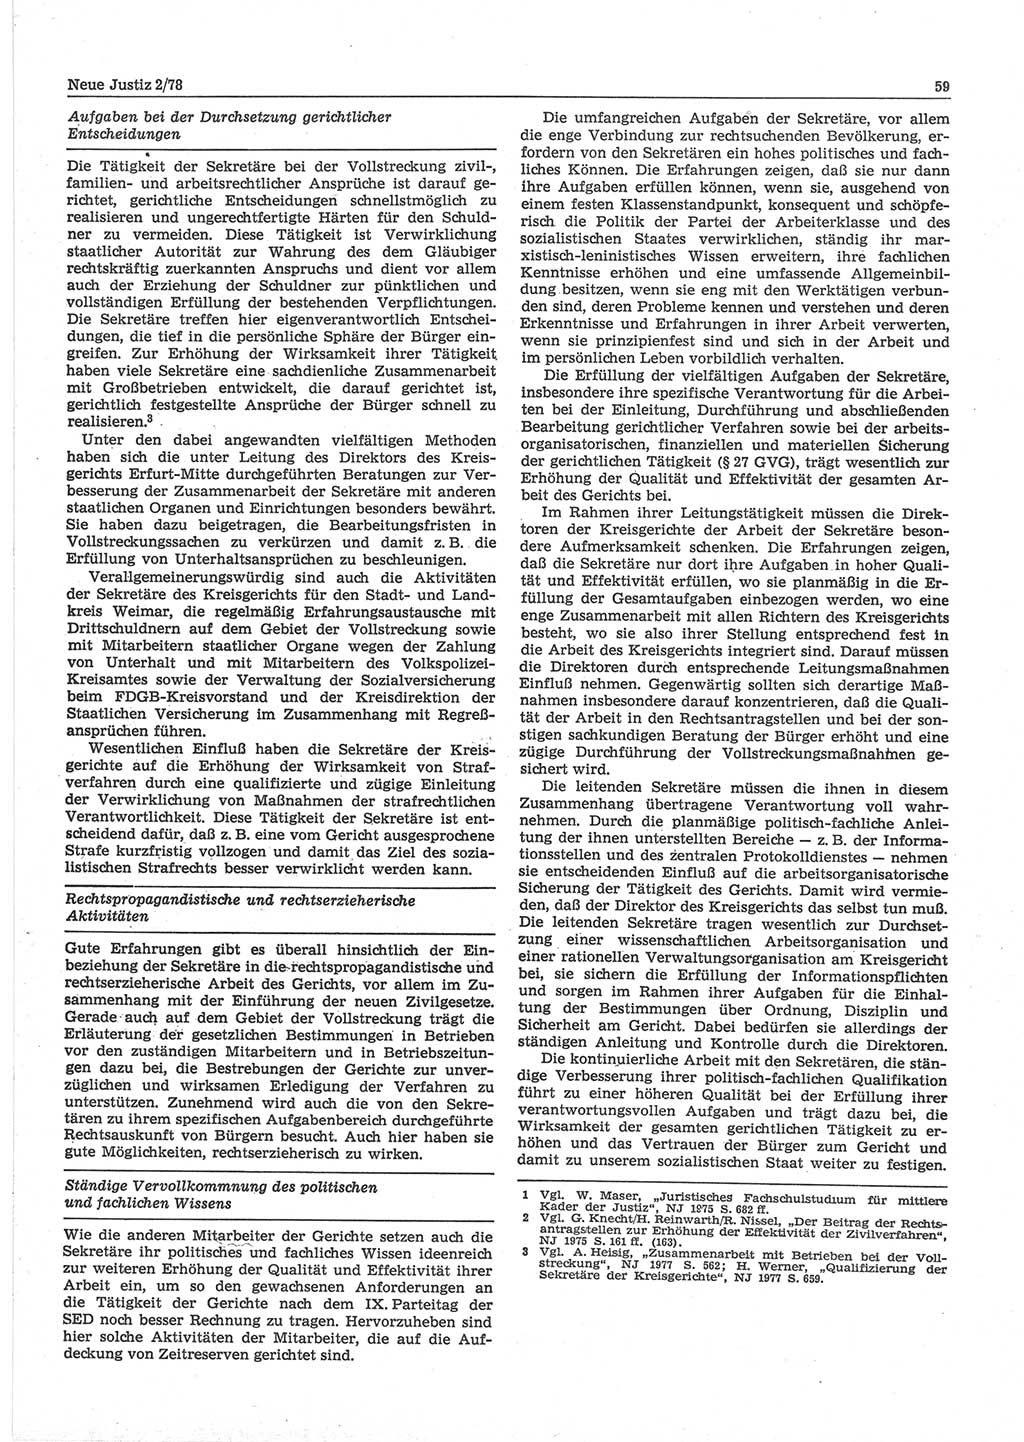 Neue Justiz (NJ), Zeitschrift für sozialistisches Recht und Gesetzlichkeit [Deutsche Demokratische Republik (DDR)], 32. Jahrgang 1978, Seite 59 (NJ DDR 1978, S. 59)